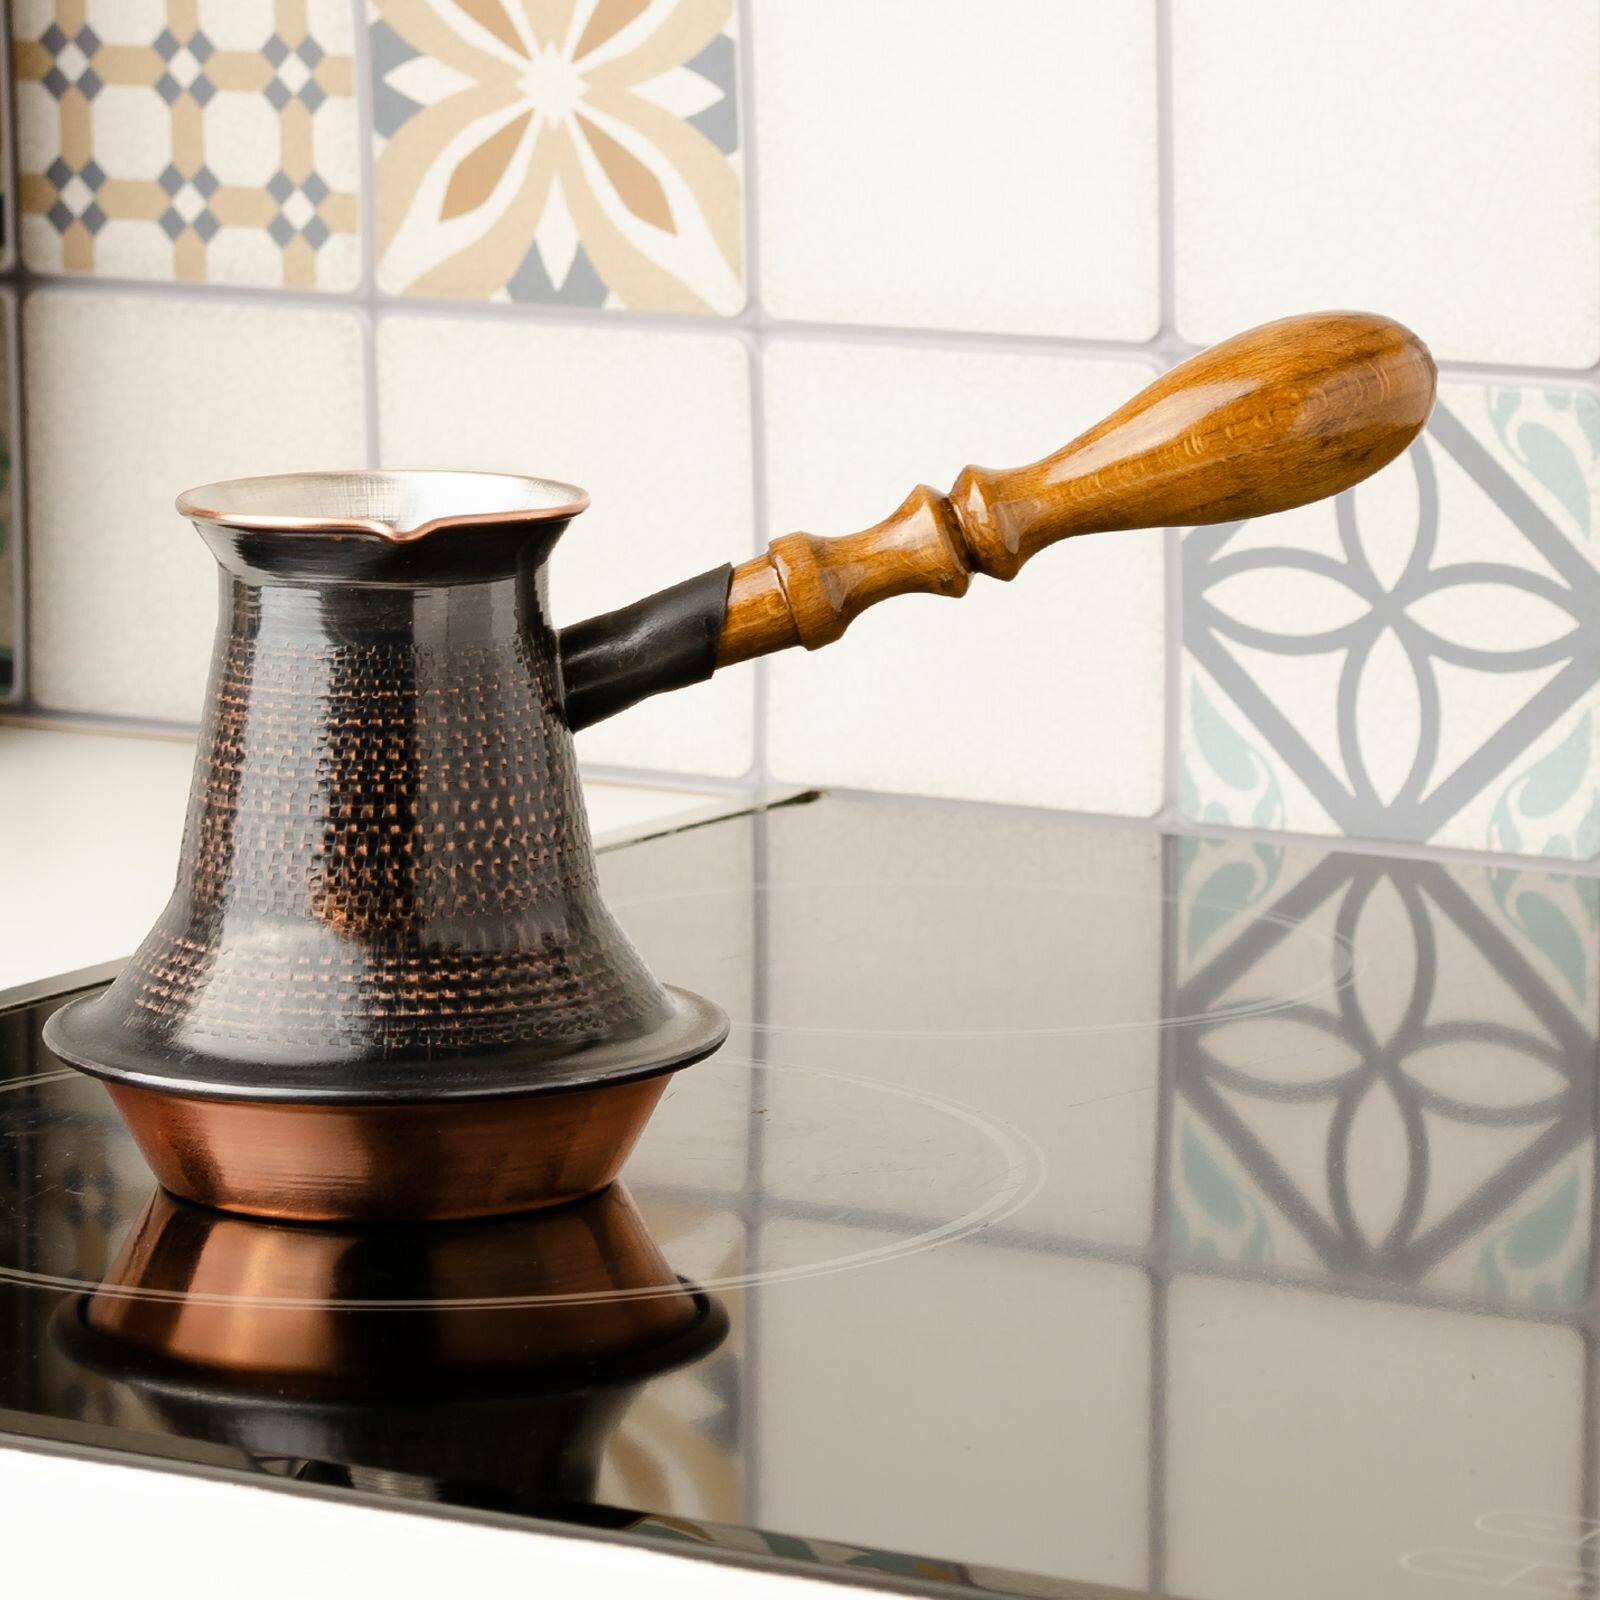 Турка для кофе медная с песком (230 мл) армянская джезва , восточная посуда , подарок